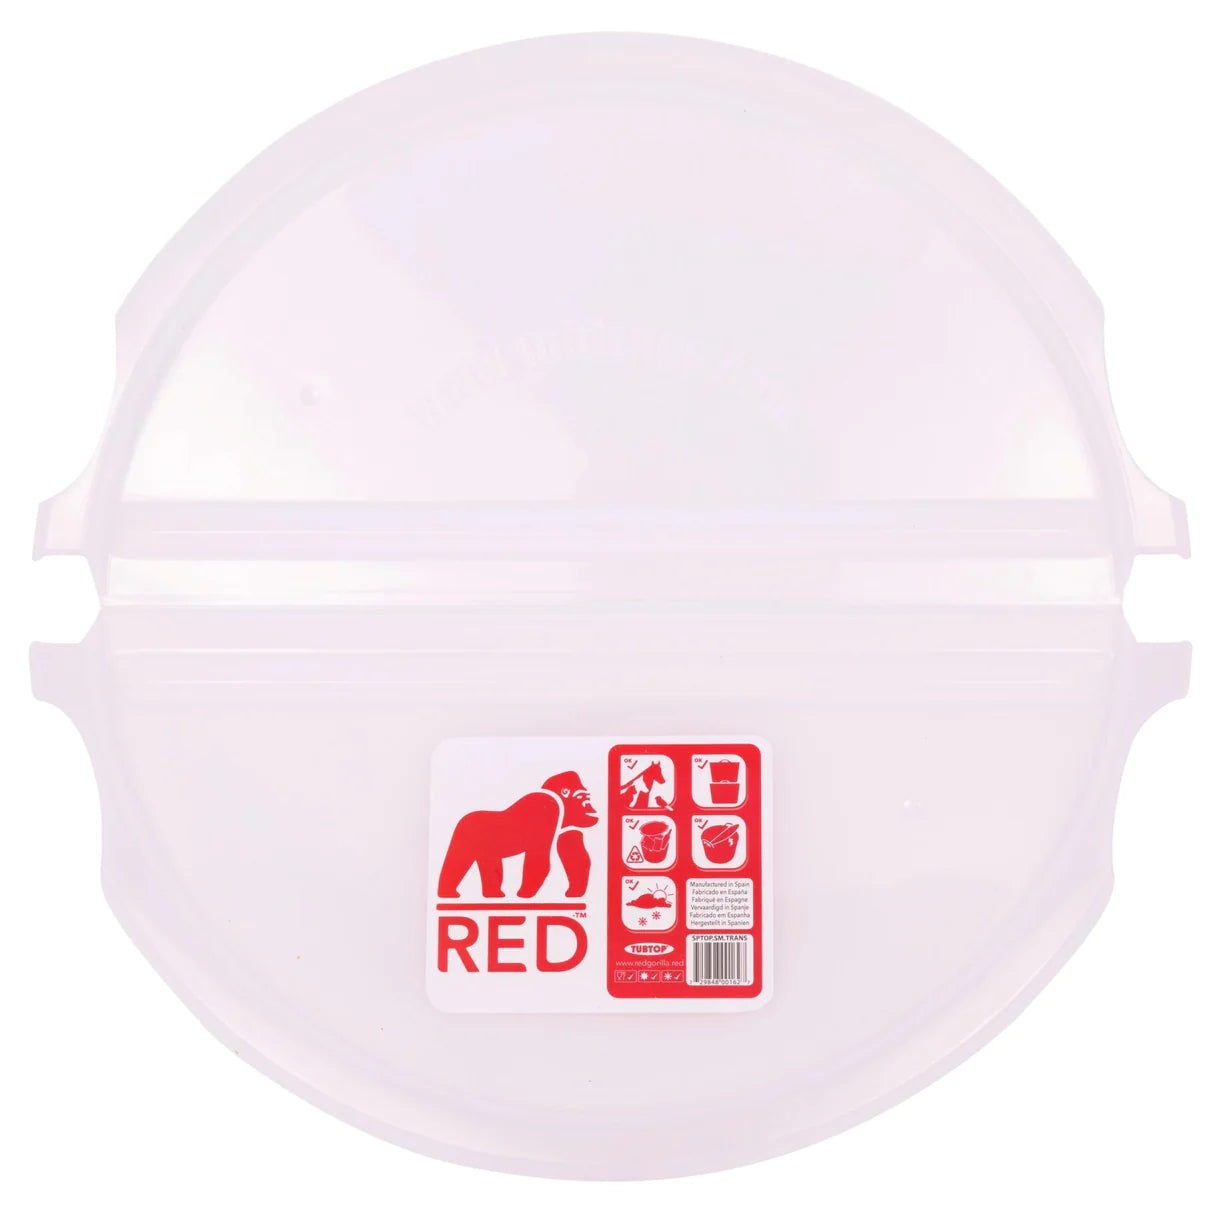 Red Gorilla Tub Top